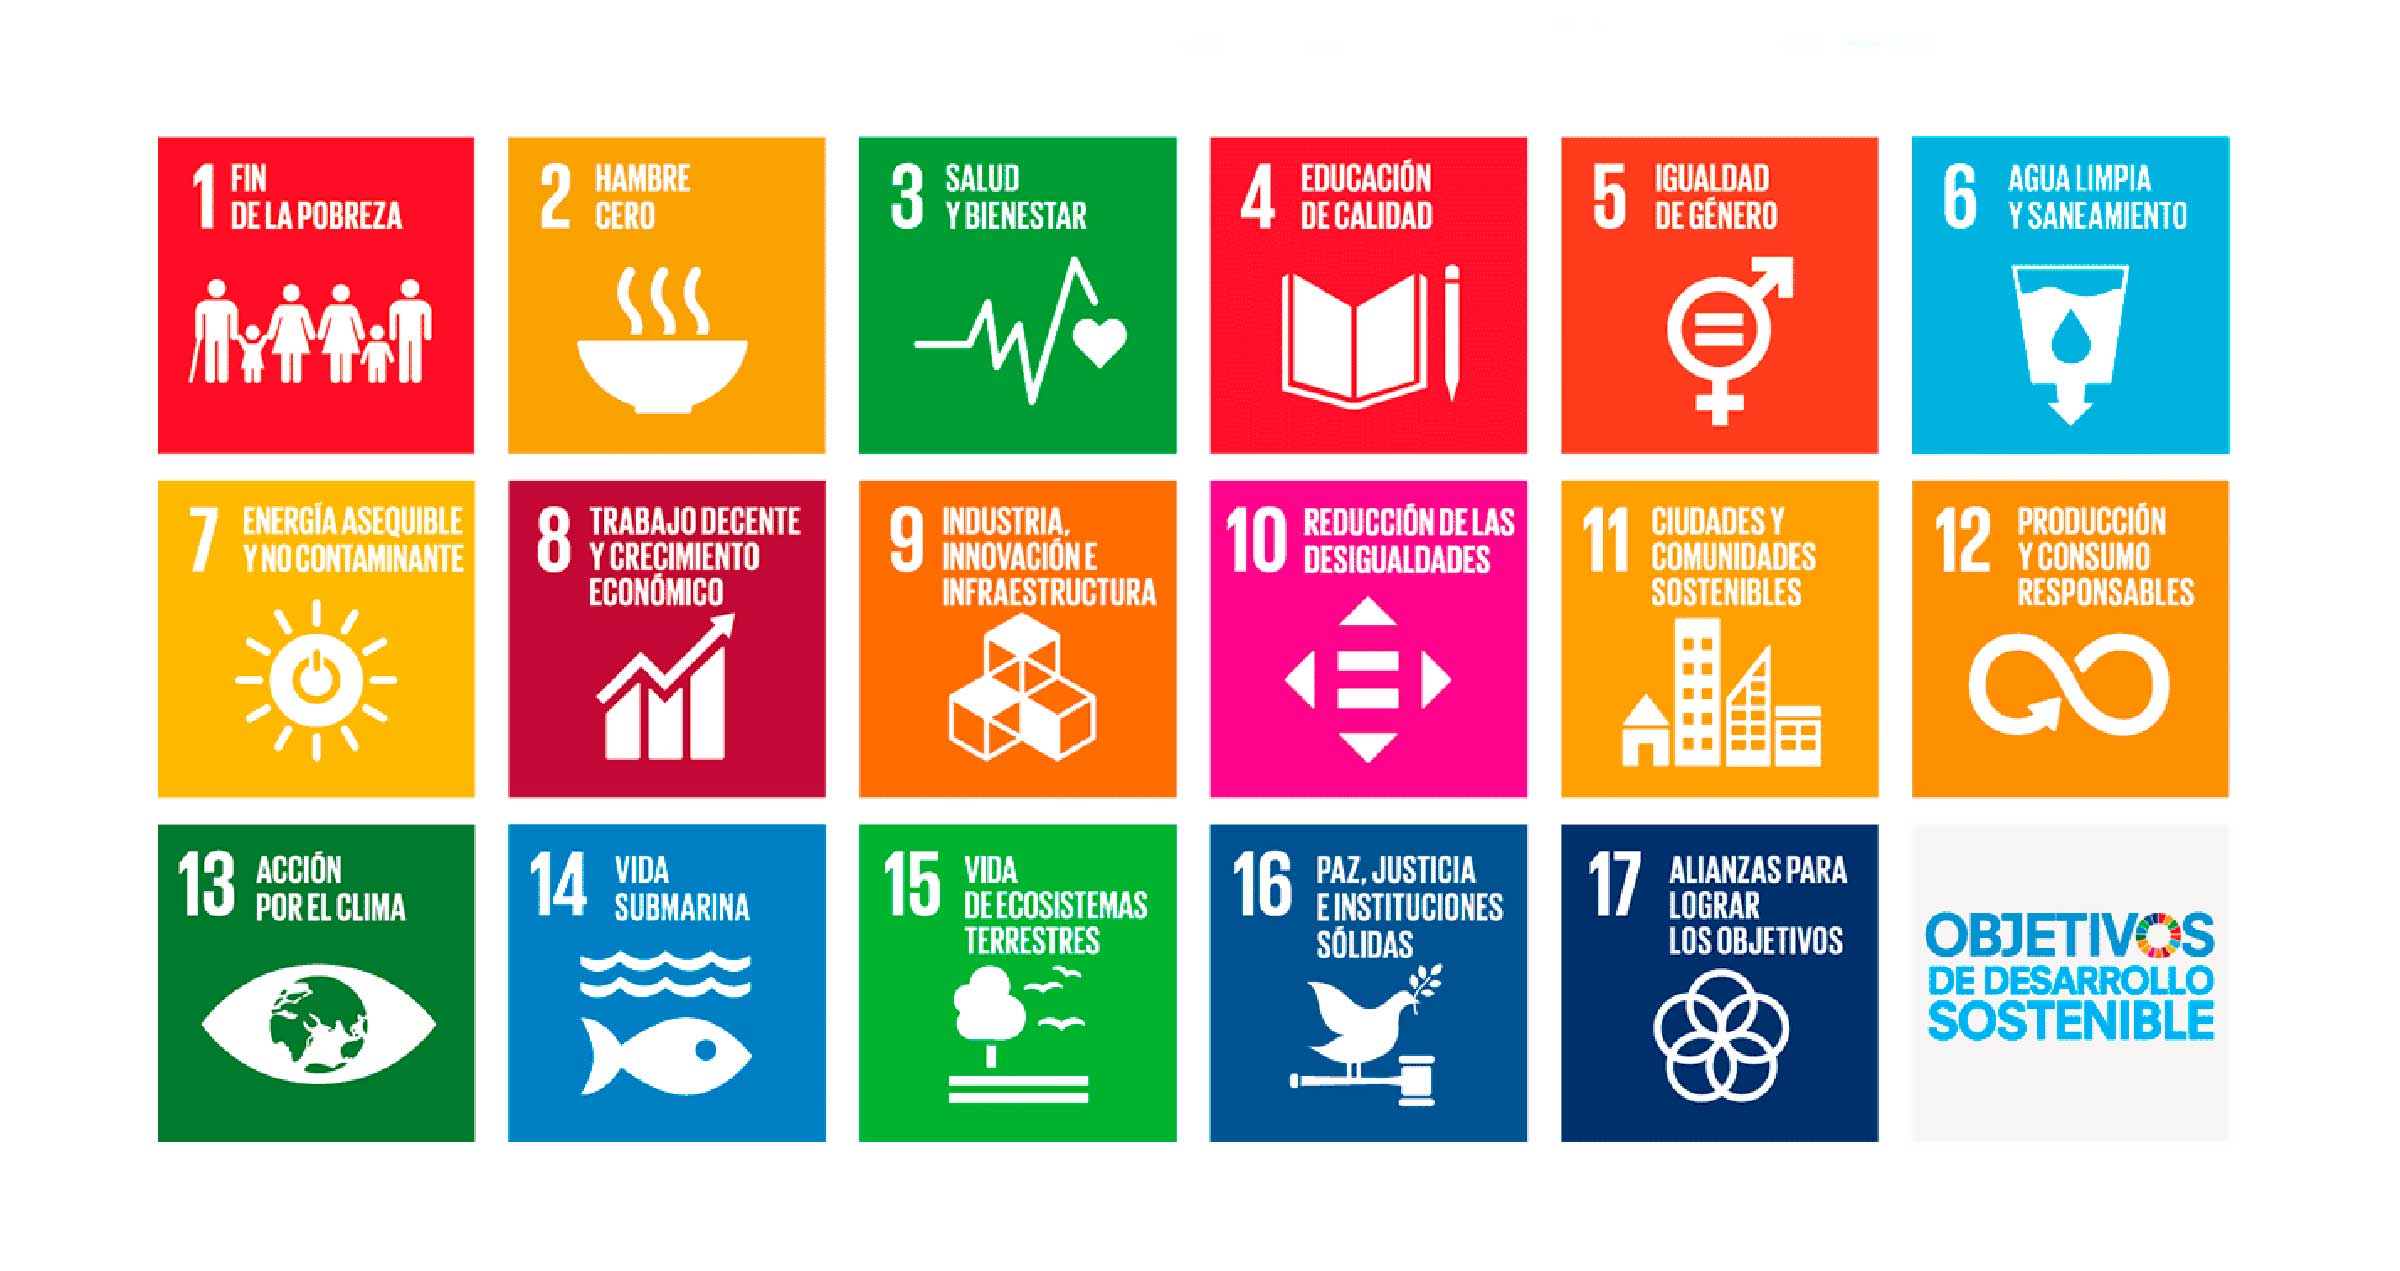 Objetivos de Desarrollo Sostenible, Agenda 2030 de las Naciones Unidas